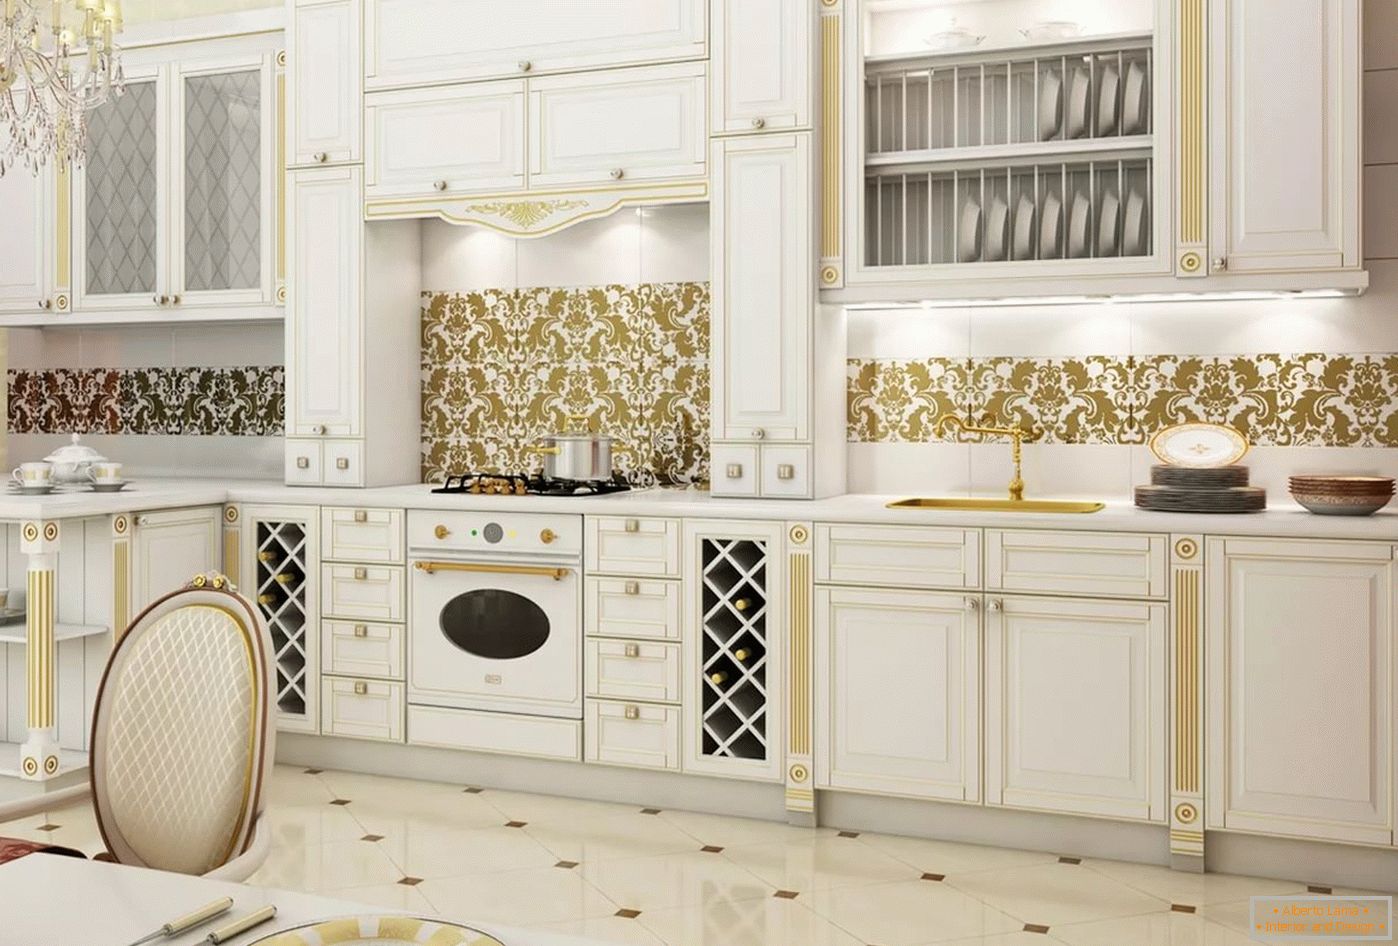 Blanco y dorado en el interior y diseño de la cocina